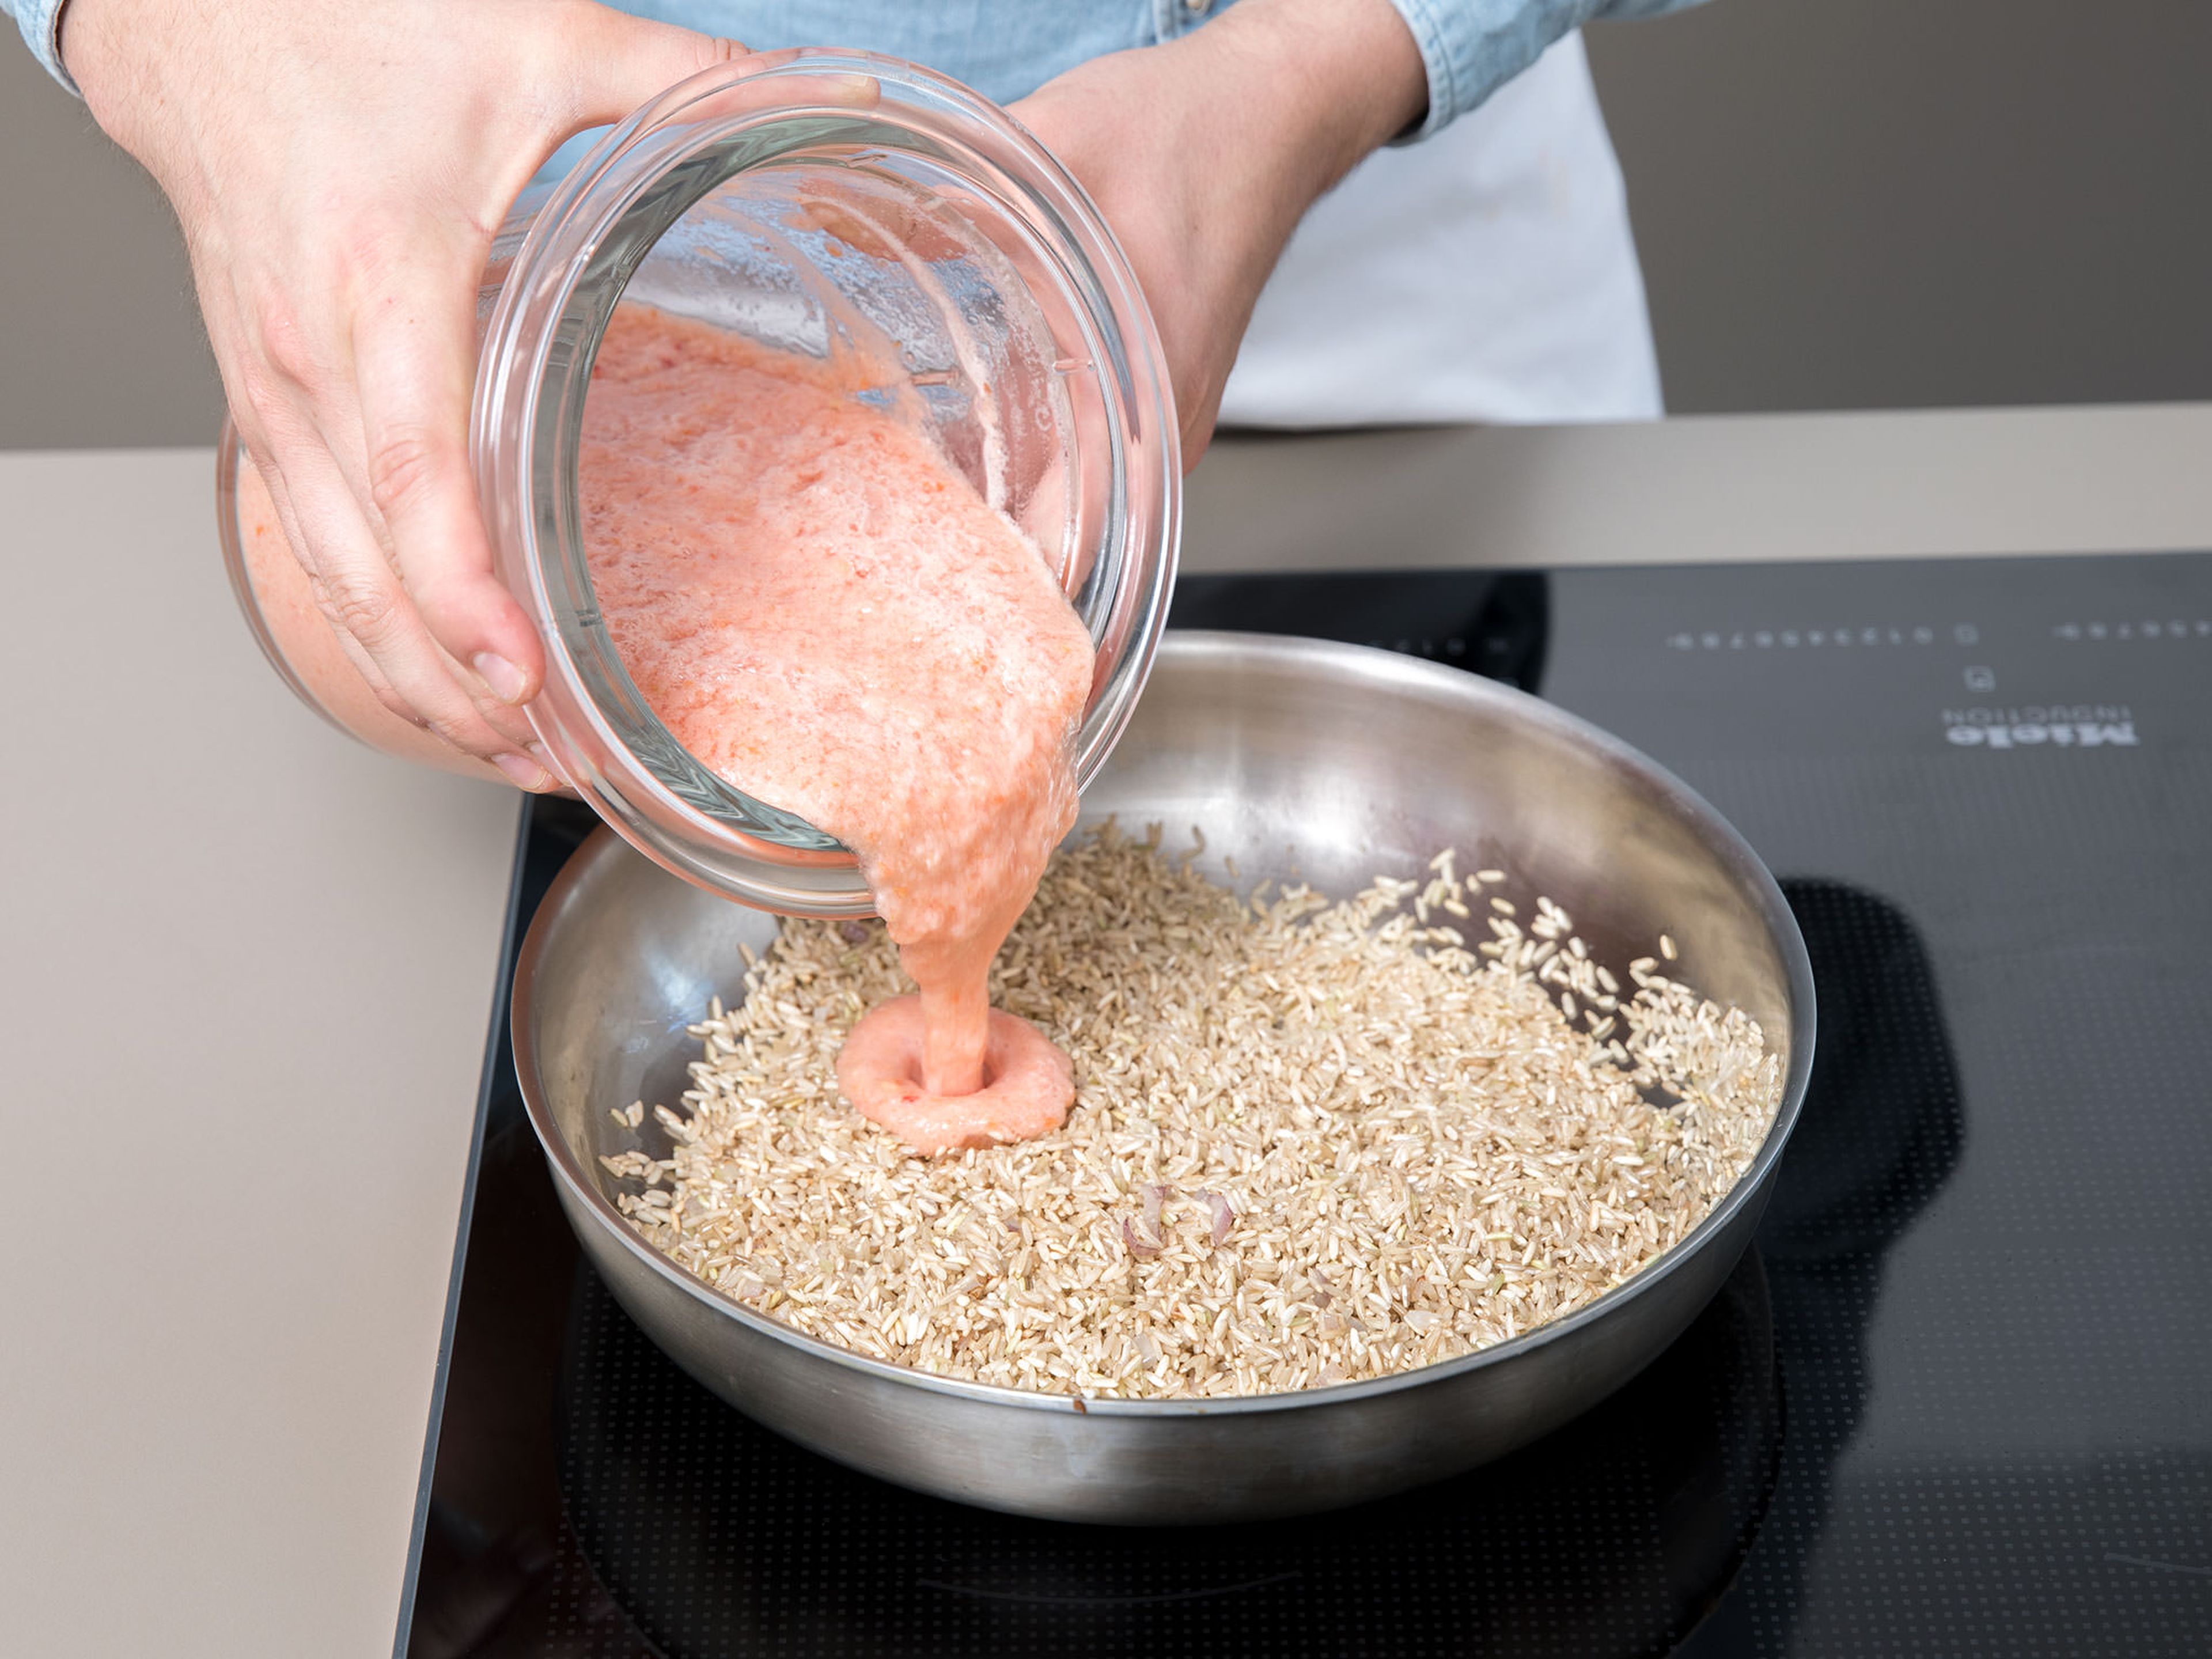 Nun wird der Reis gebraten und gedünstet. Zunächst etwas Zwiebel in Öl anbraten, dann den Reis hinzugeben und ca. 2 Min. braten. Die Tomatensoße dazu geben, aufkochen und so lange köcheln lassen, bis der Reis gar ist.